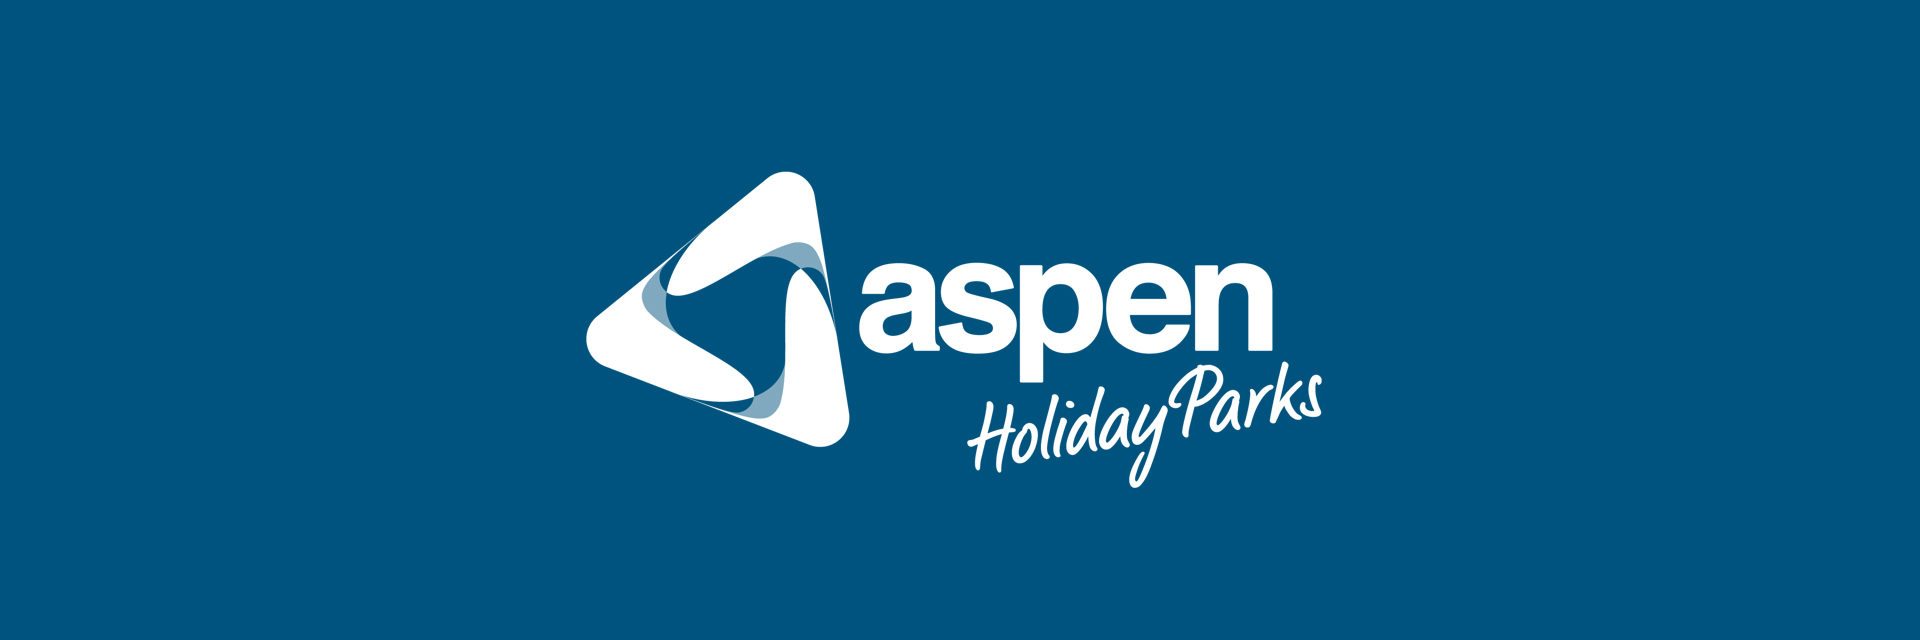 aspen-branding